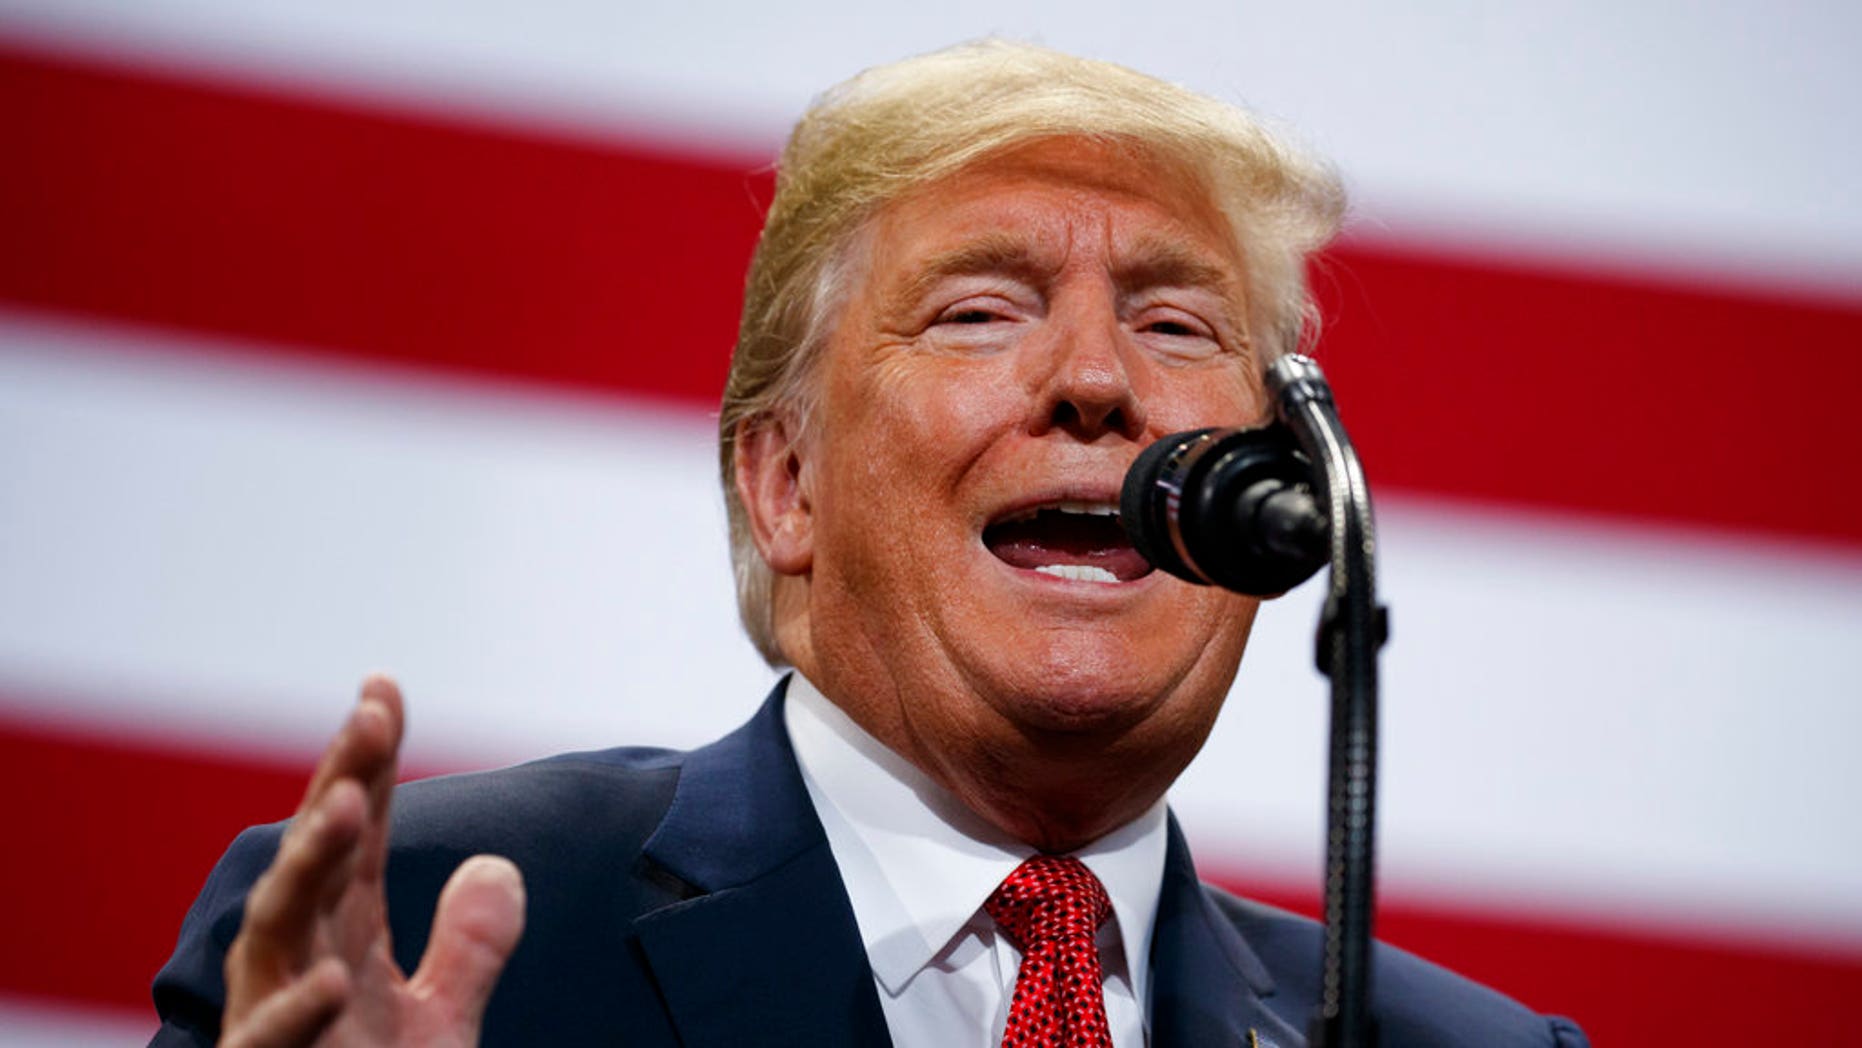 DOSSIER: Le président Donald Trump s'exprimant lors d'un rassemblement de campagne au Mayo Civic Center à Rochester, au Minnesota.